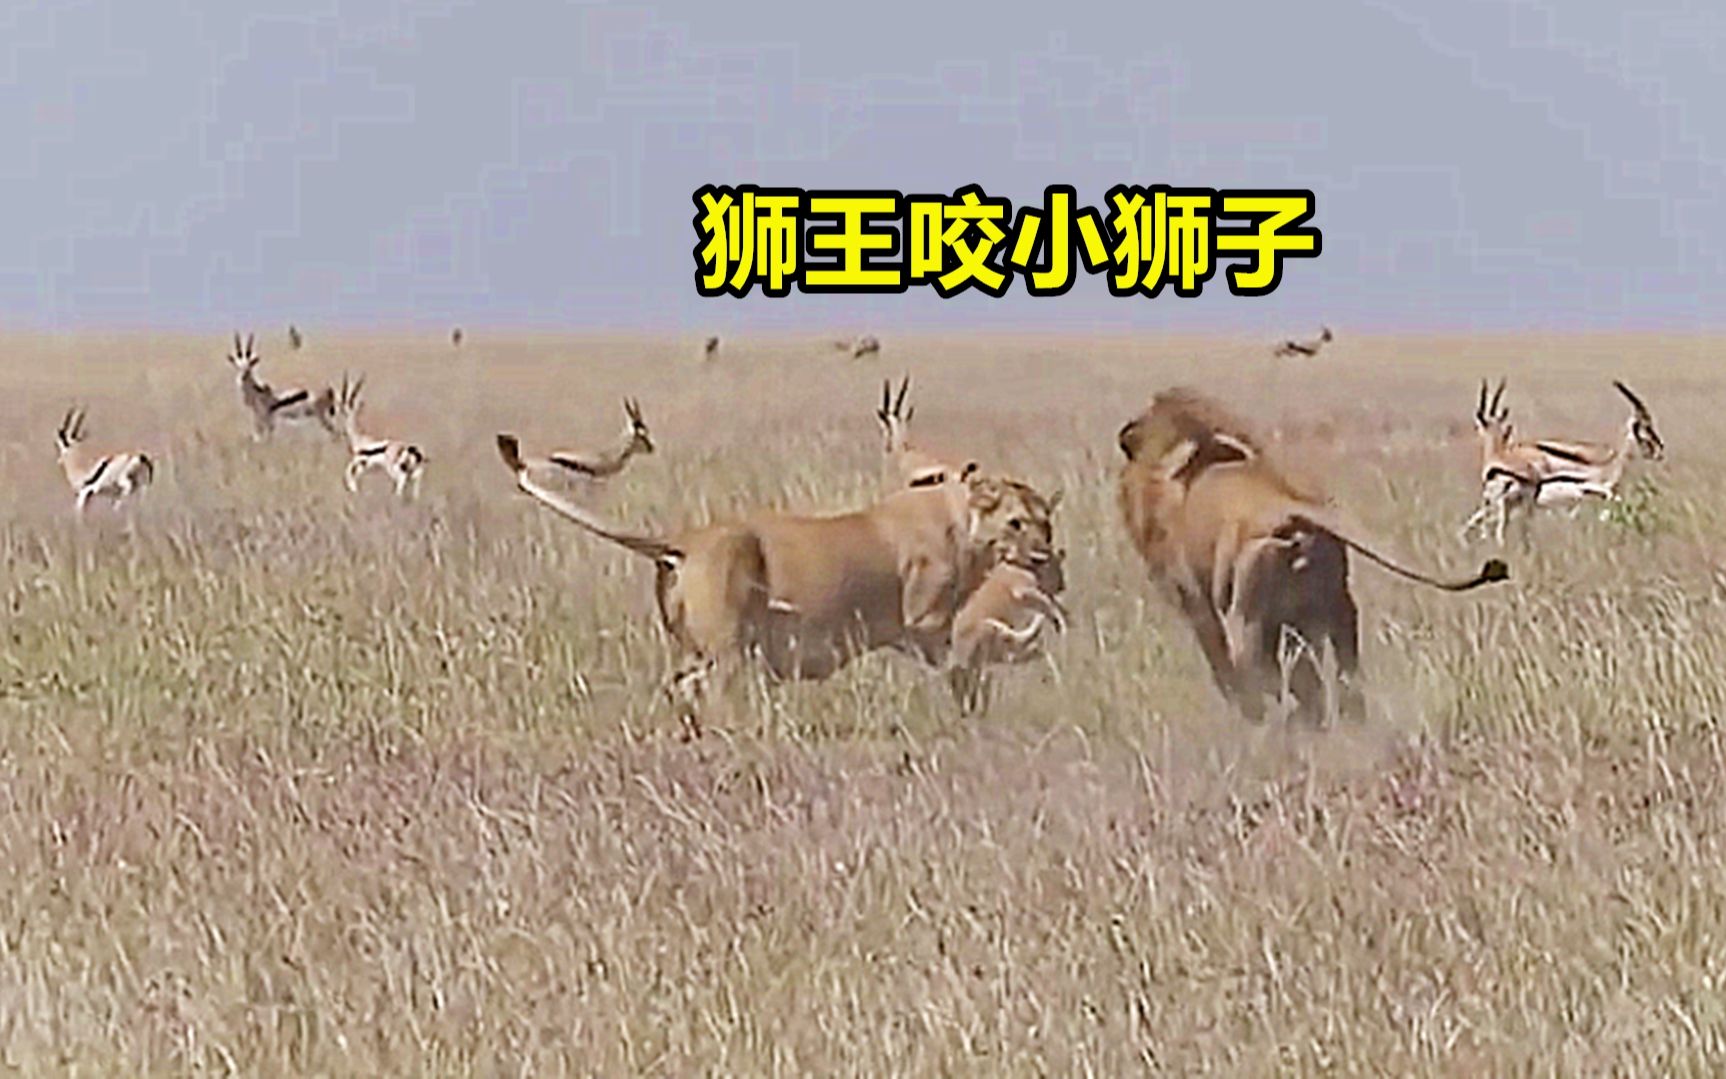 狮王飞奔向母狮，试图咬死小狮子，得知是自己儿子笑得合不拢嘴